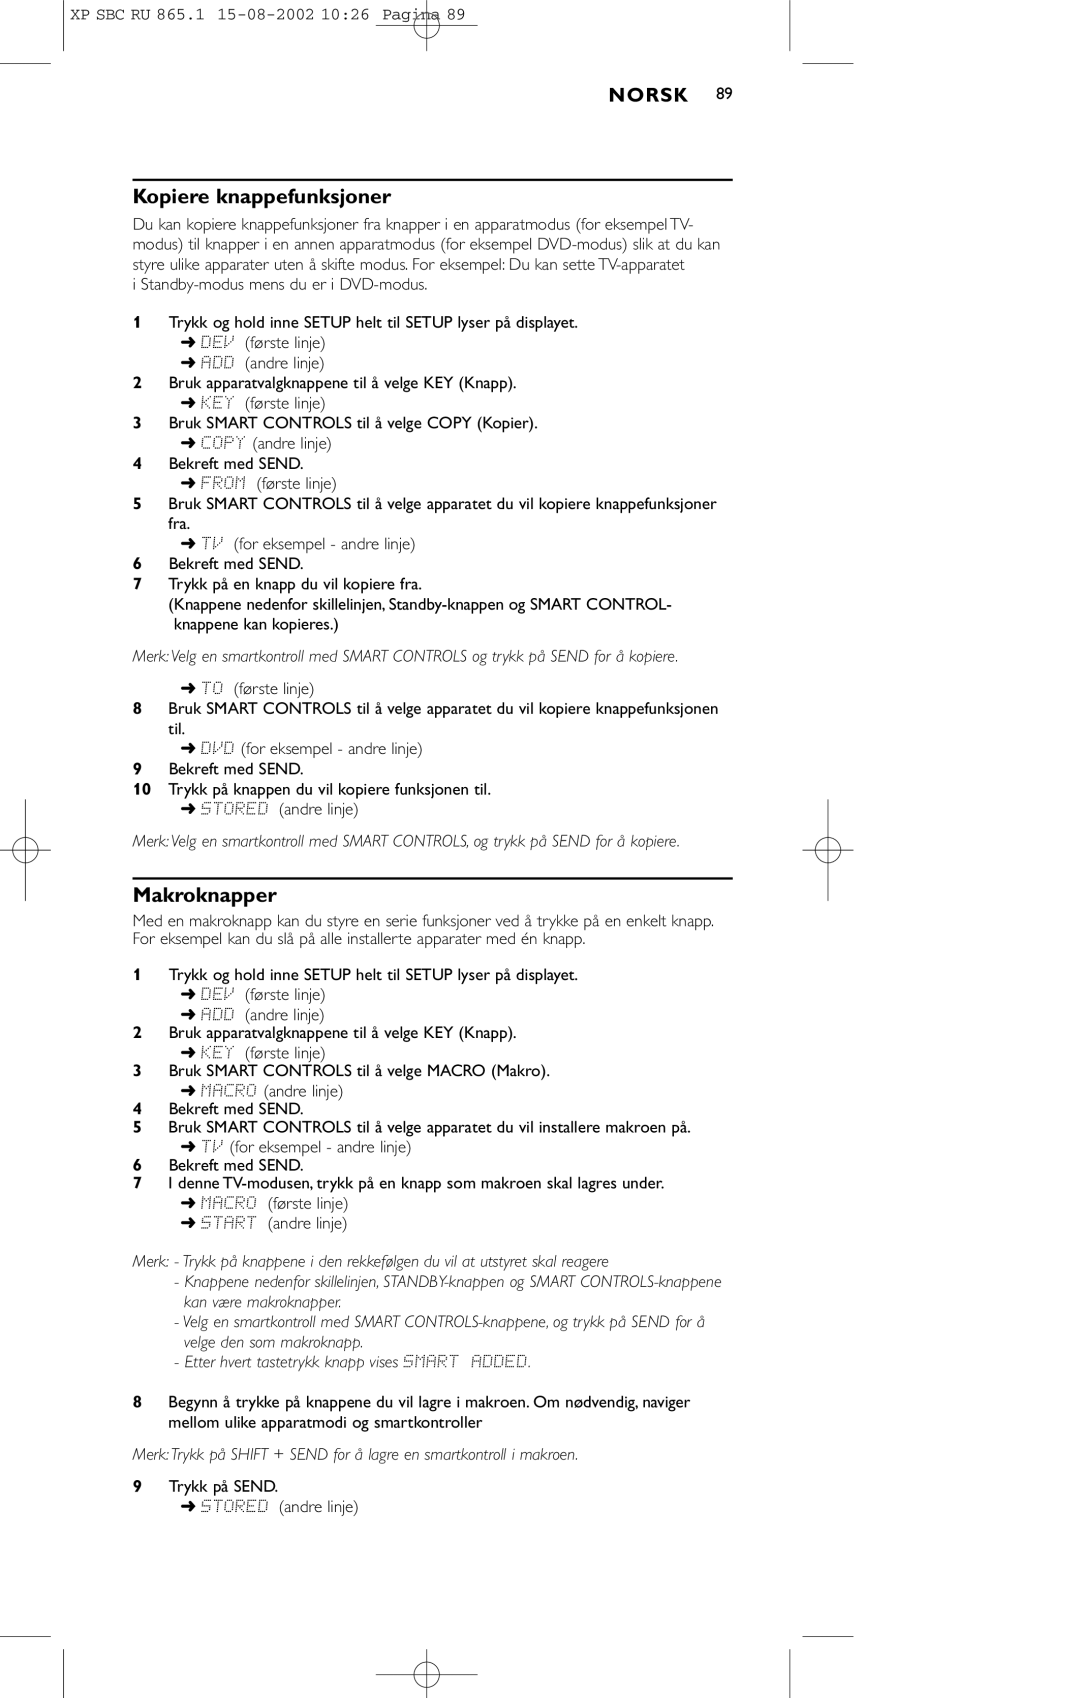 Philips SBC RU 865/00 manual Kopiere knappefunksjoner, Makroknapper 